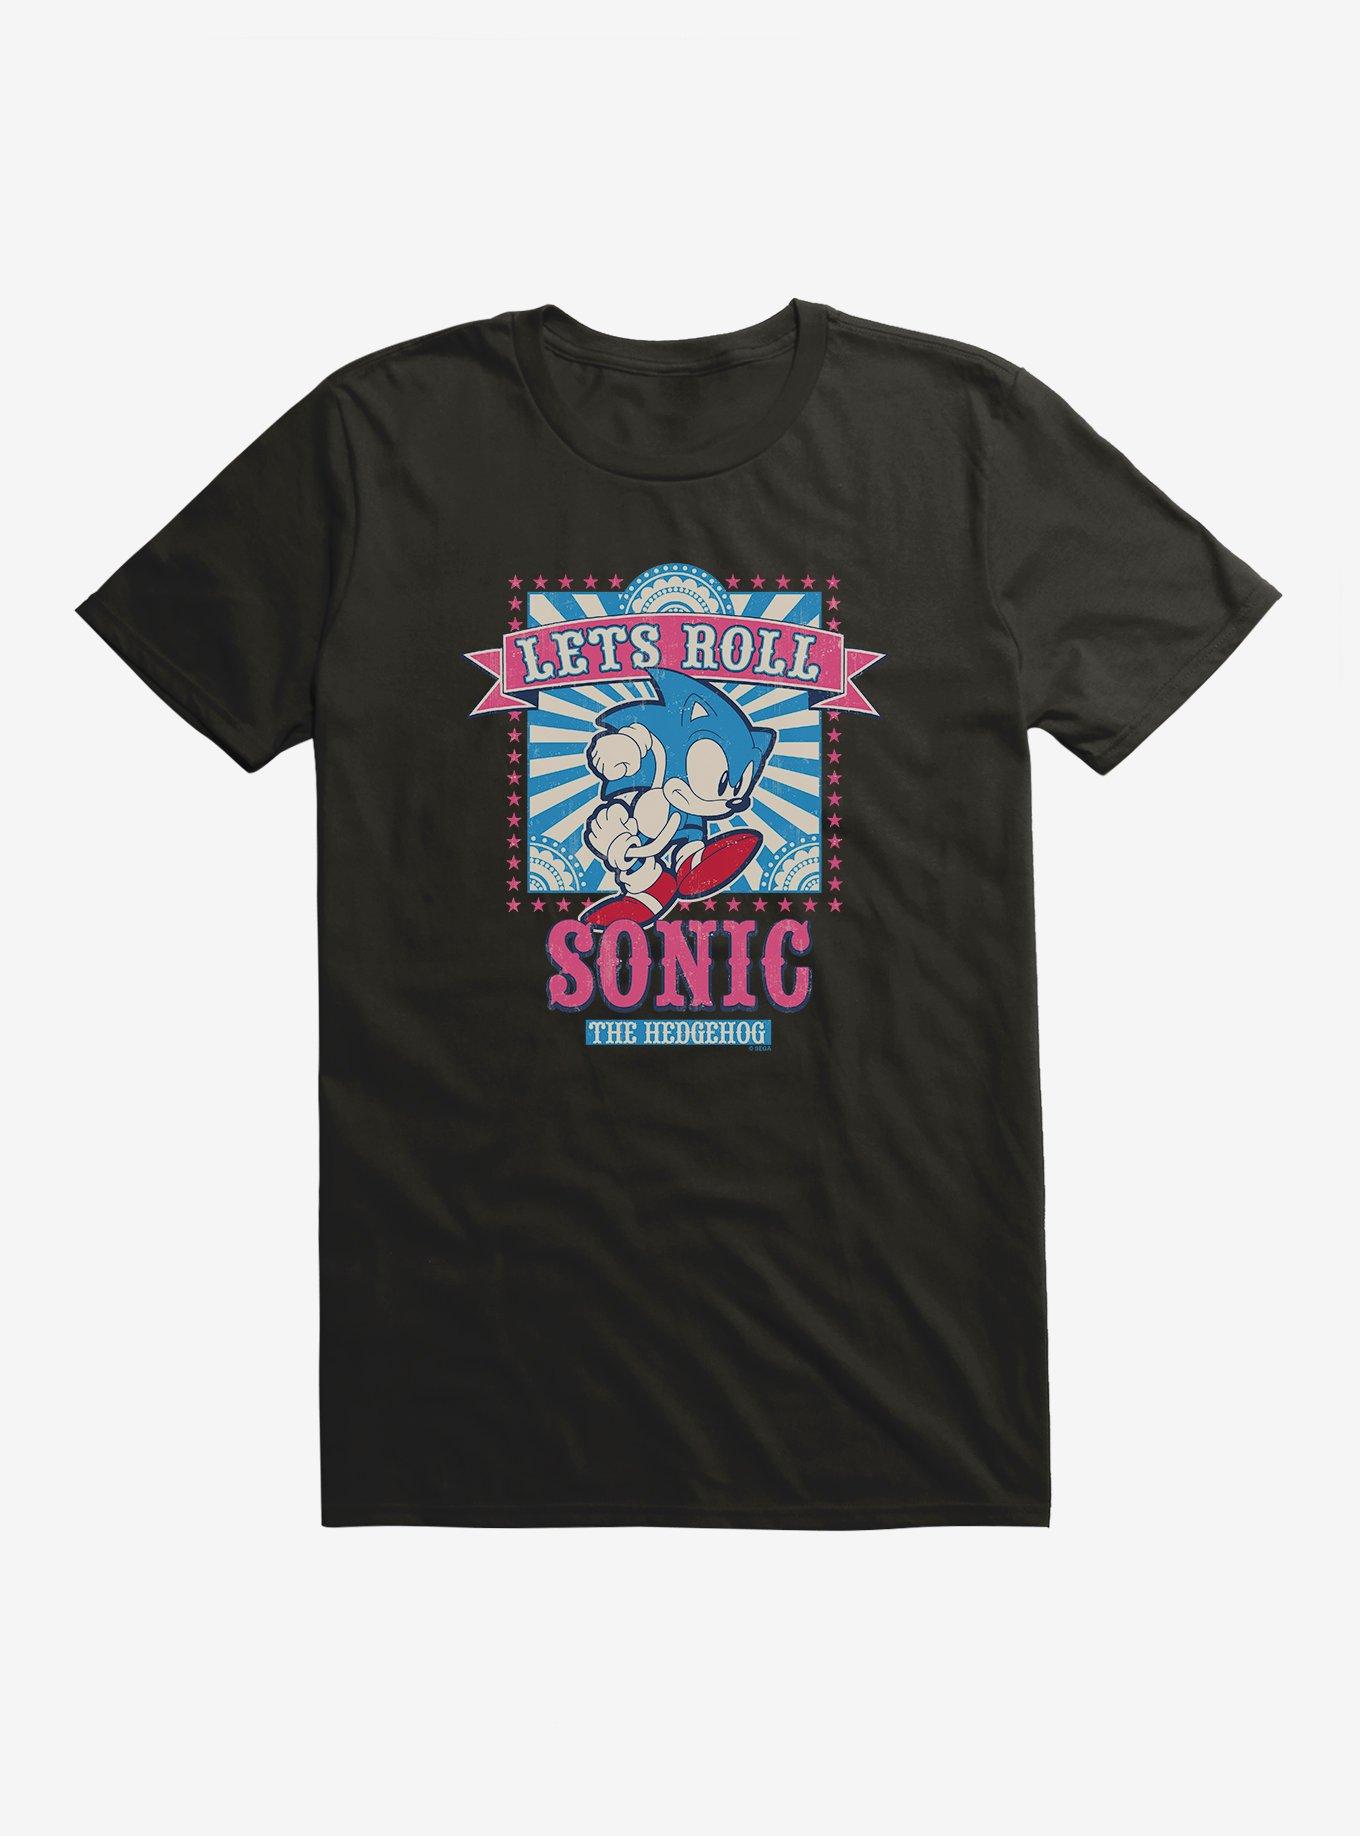 Sonic The Hedgehog Let's Roll T-Shirt, BLACK, hi-res